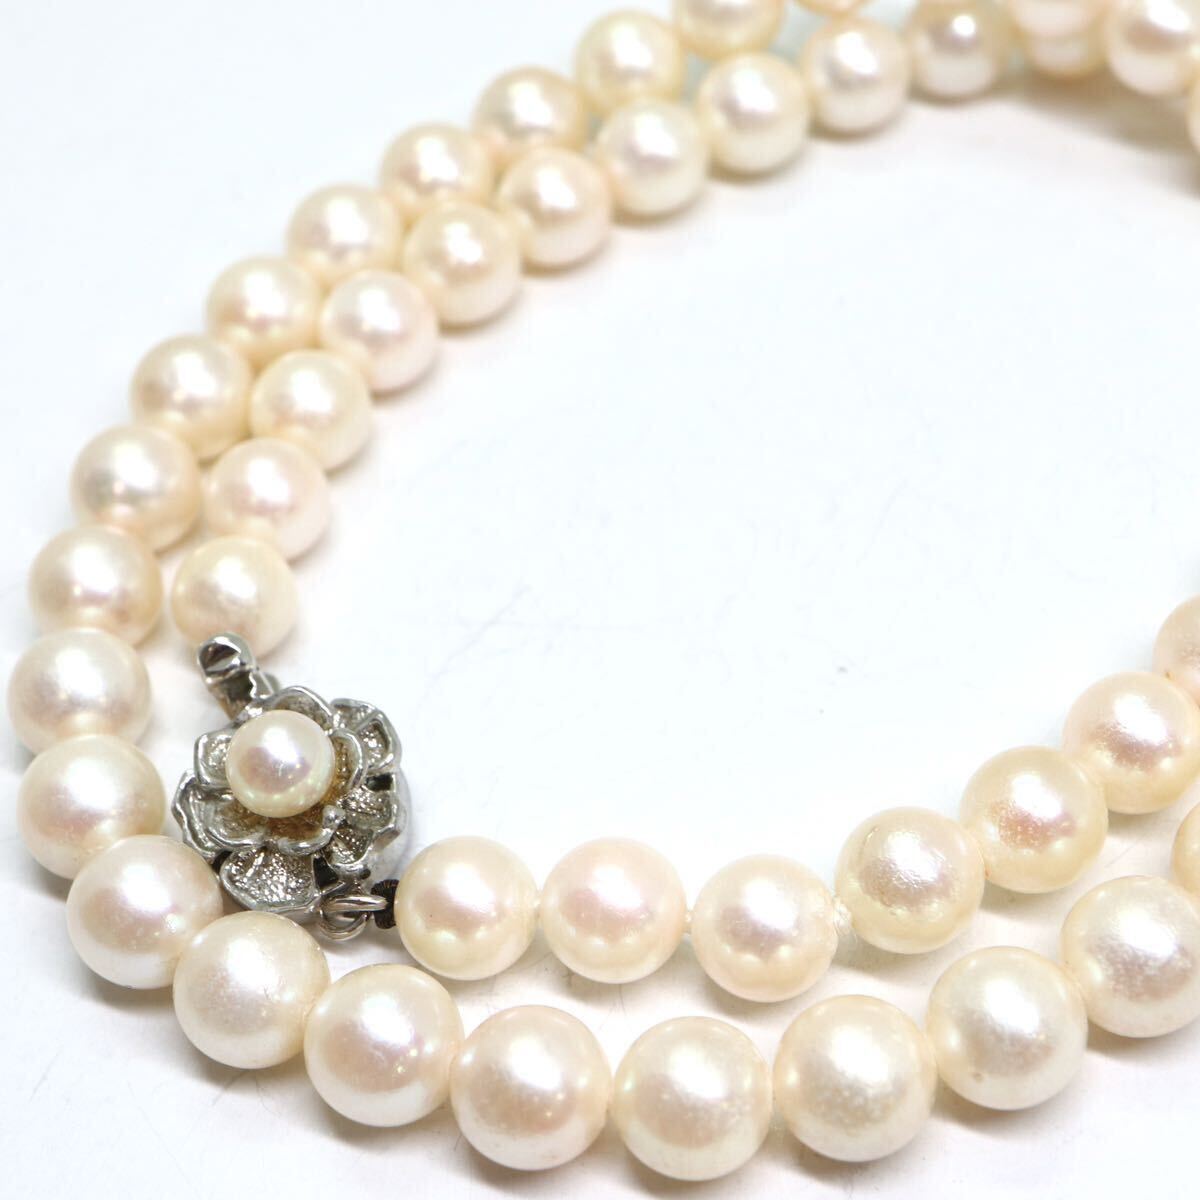 《アコヤ本真珠ネックレス》A 約6.5-7.0mm珠 27.3g 約40cm pearl necklace ジュエリー jewelry CE5/CE5の画像1